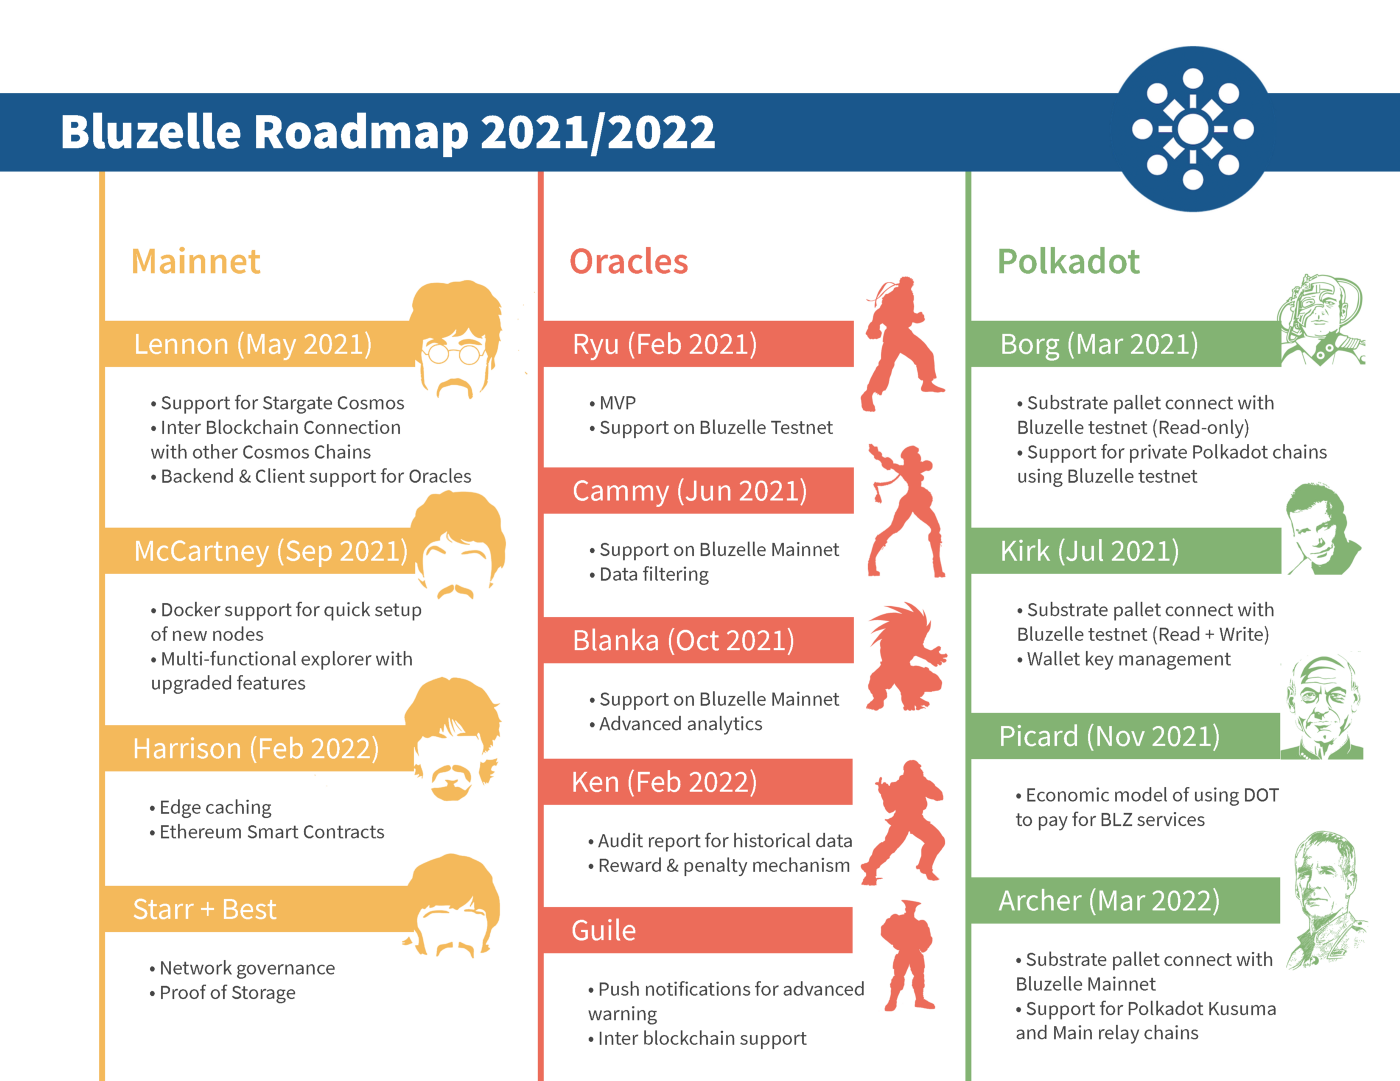 去中心化数据库Bluzelle宣布2021年门路图，将于2月3日上线主网